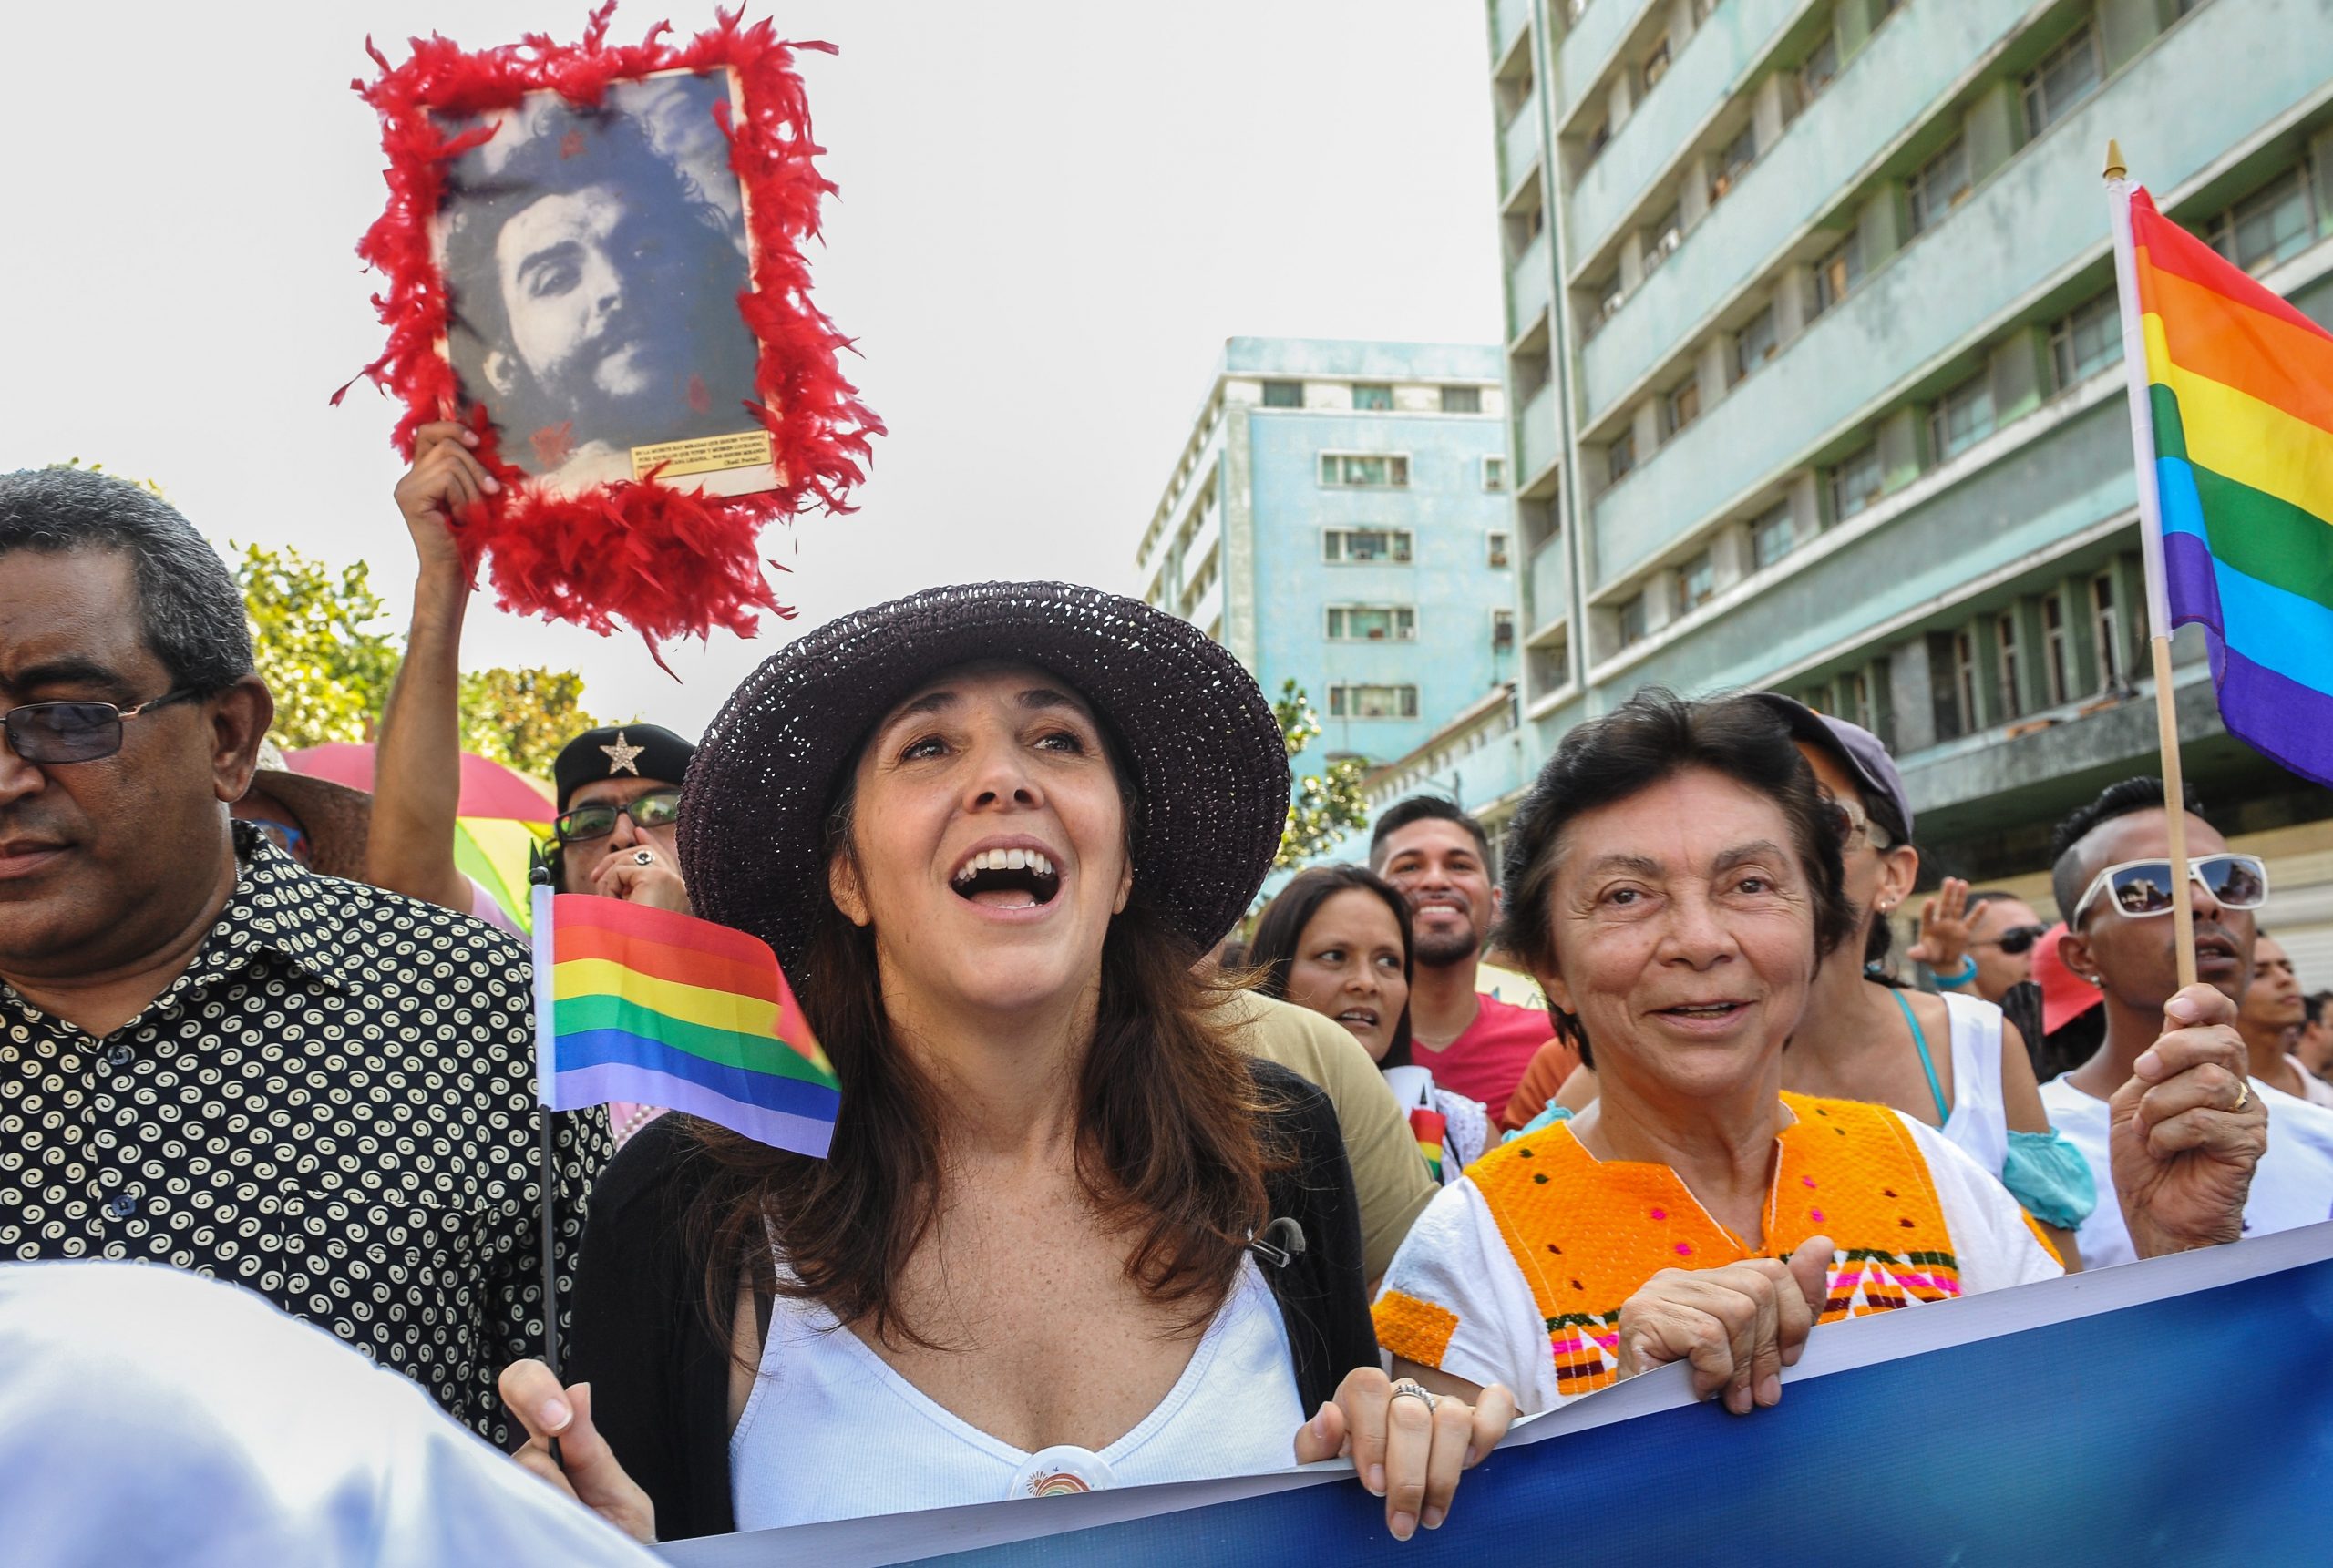 Cuba legaliza casamento homoafetivo em referendo histórico